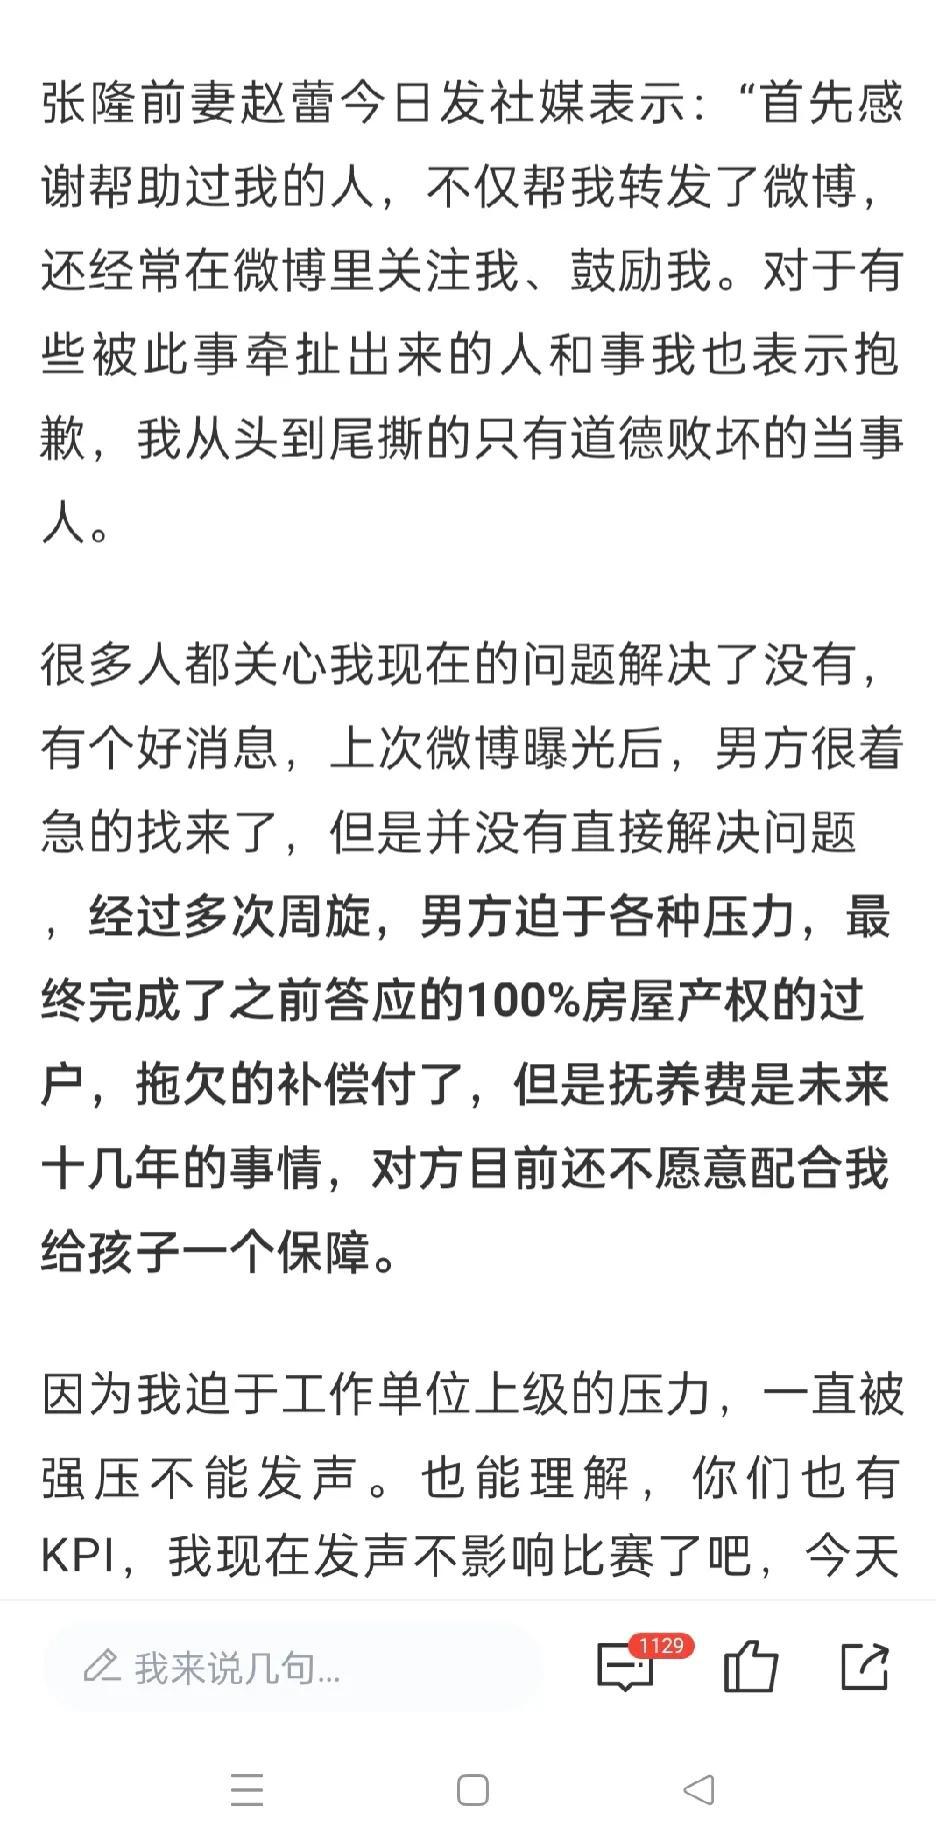 对于张隆前期炮轰李梦为张隆未给抚养费辩护事件，我有三个疑问！

1、张隆迫于压力(1)